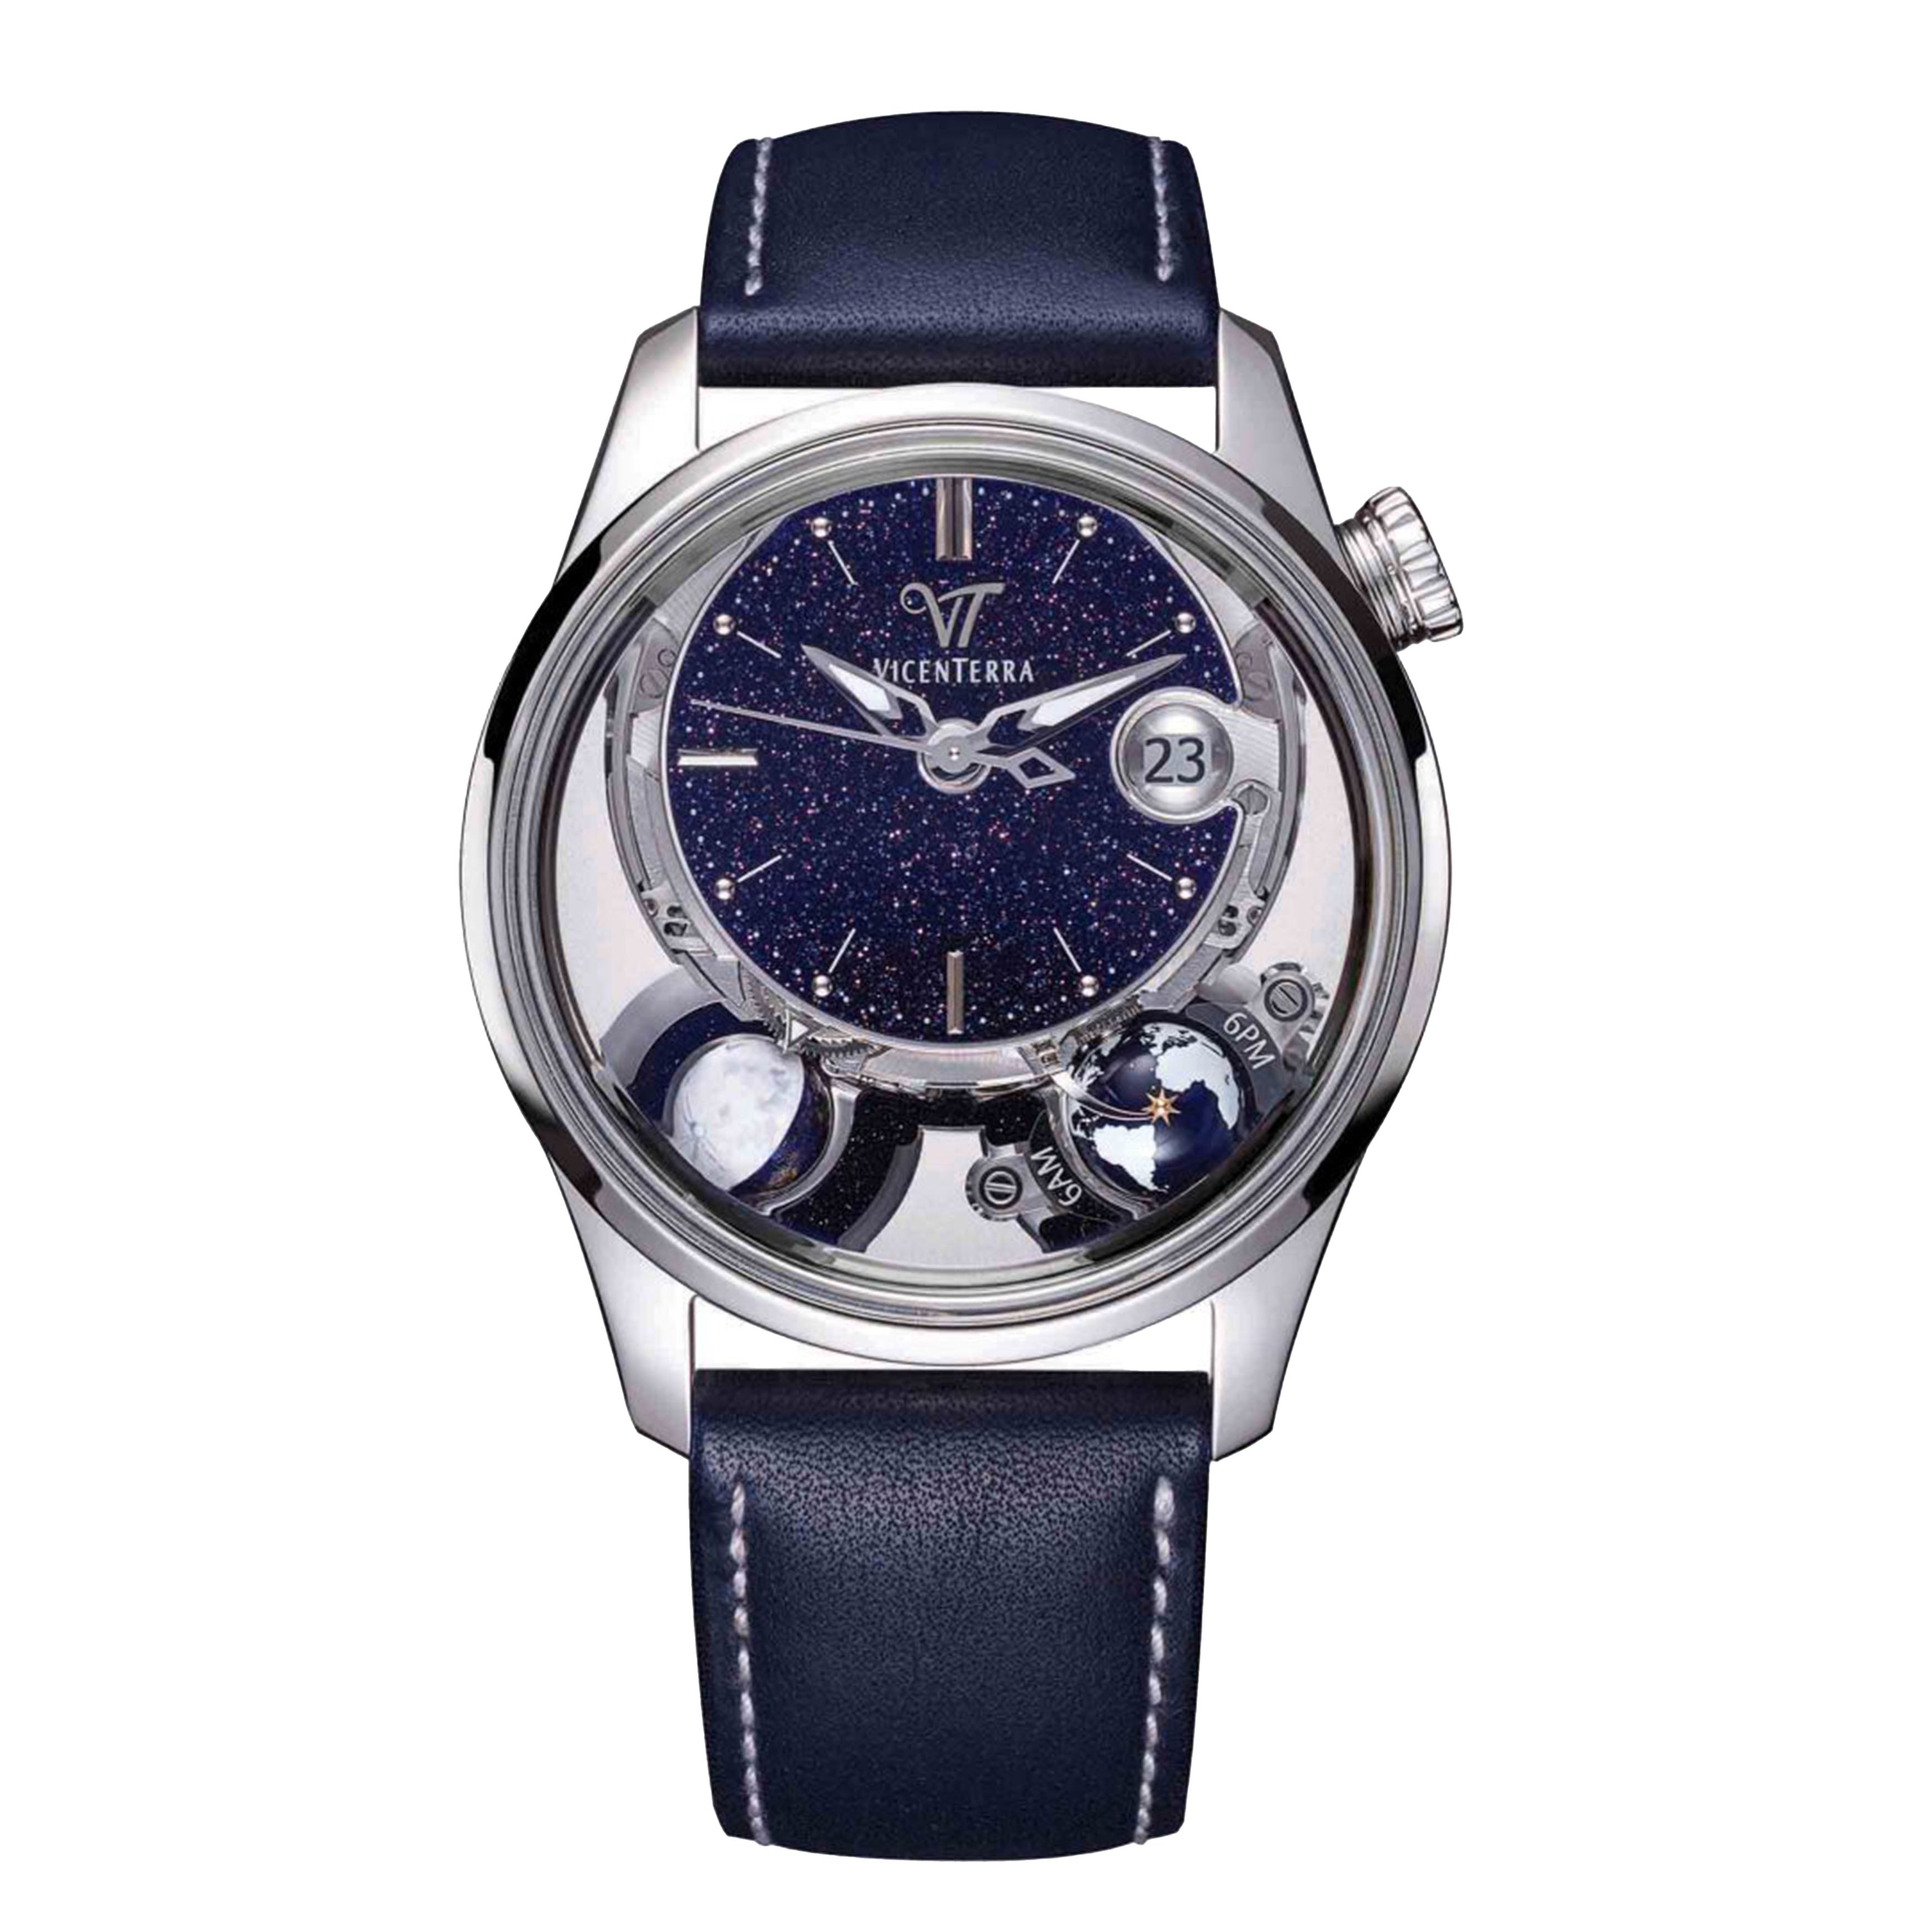 Vicenterra Astroluna Classic T1 Aventurine Watch, 41.5mm Blue Aventurine Dial, VT.254.01.21